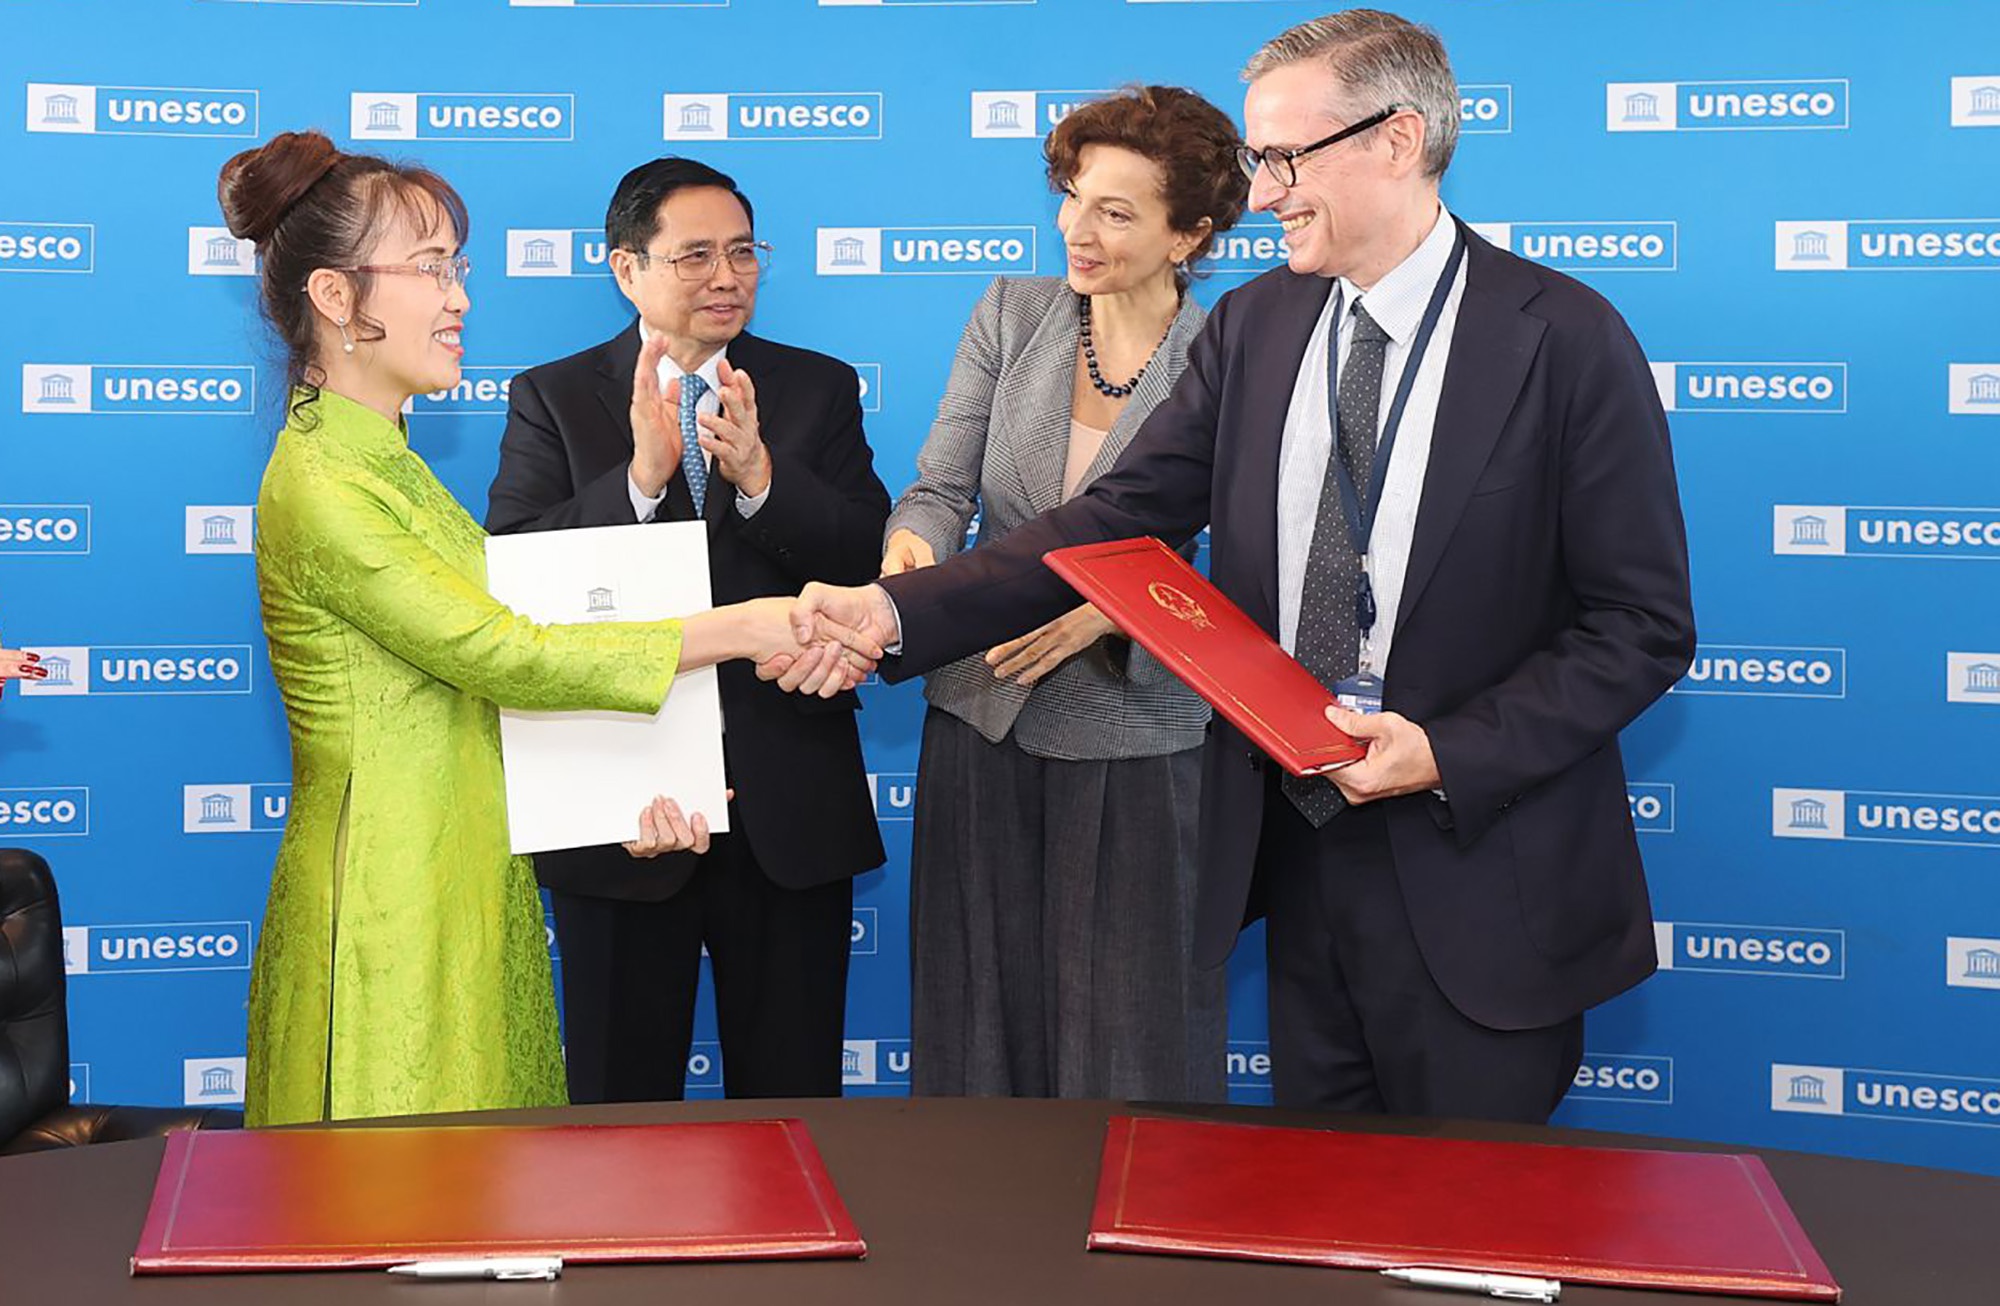 Bà Nguyễn Thị Phương Thảo, Chủ tịch kiêm Tổng giám đốc Sovico ký kết thỏa thuận hợp tác với UNESCO trước sự chứng kiến của Thủ tướng Phạm Minh Chính và Tổng giám đốc UNESCO